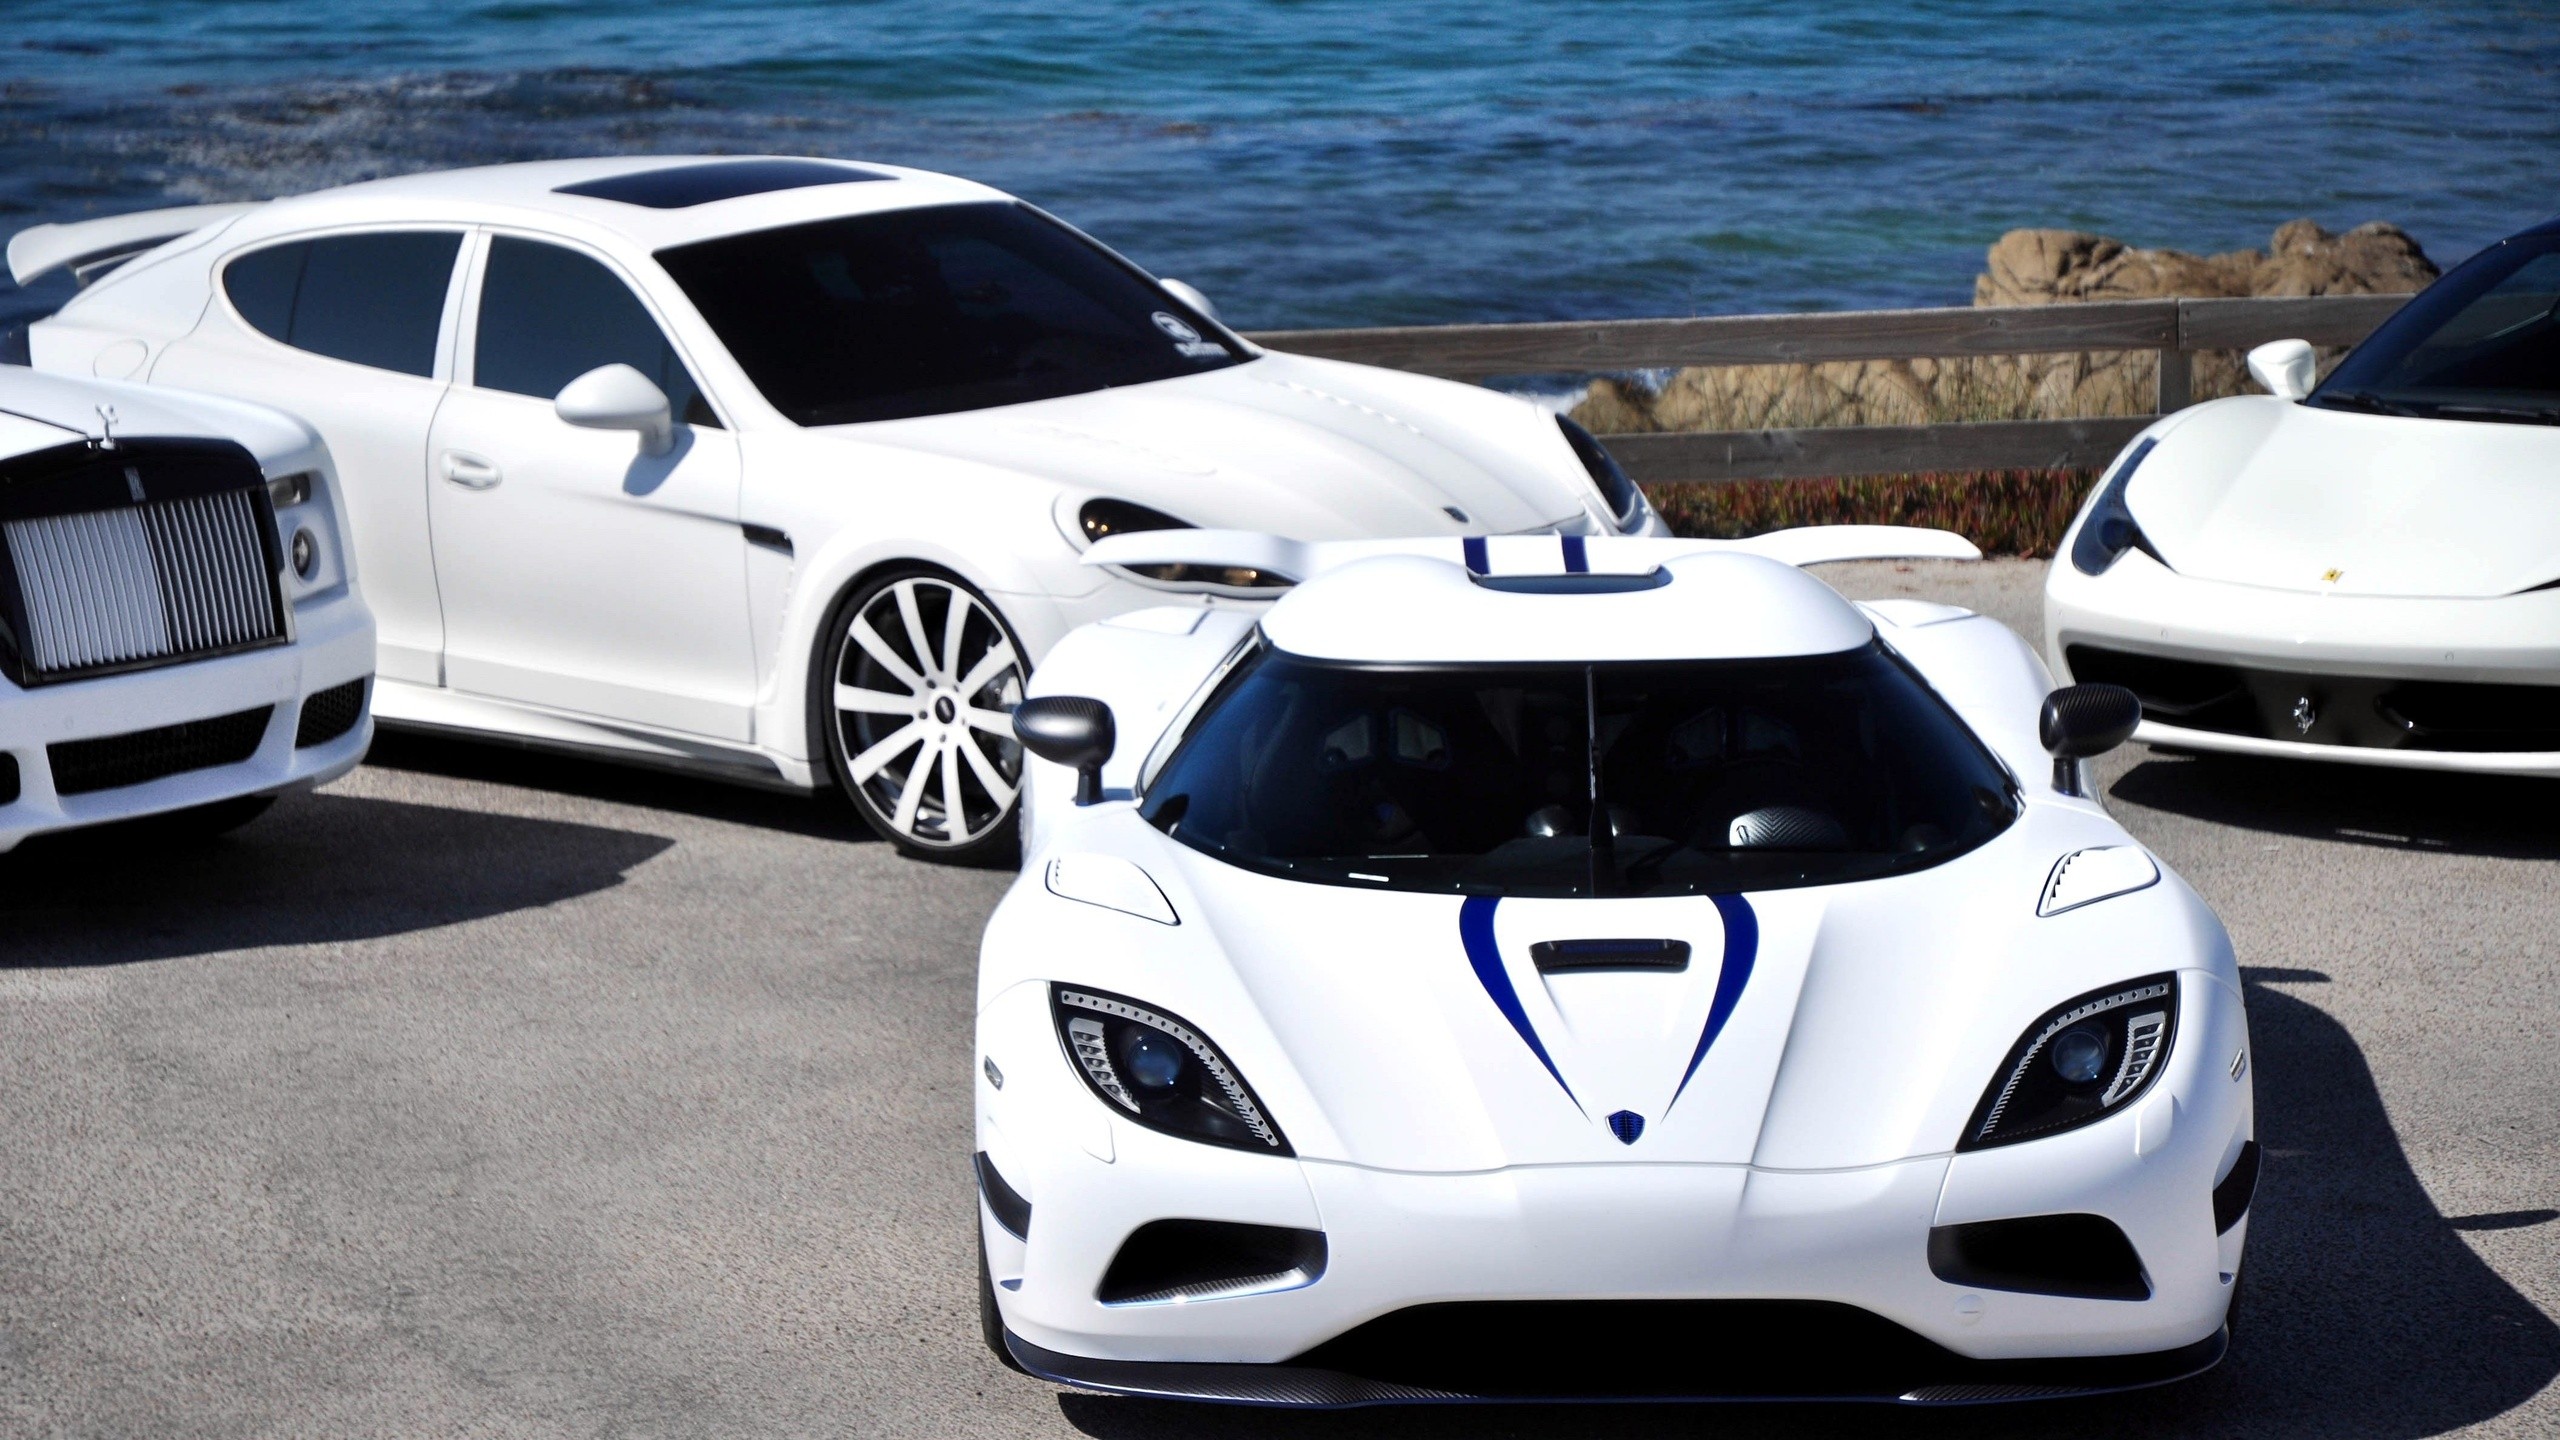 papier peint blanc de luxe,véhicule terrestre,véhicule,voiture,supercar,voiture de sport